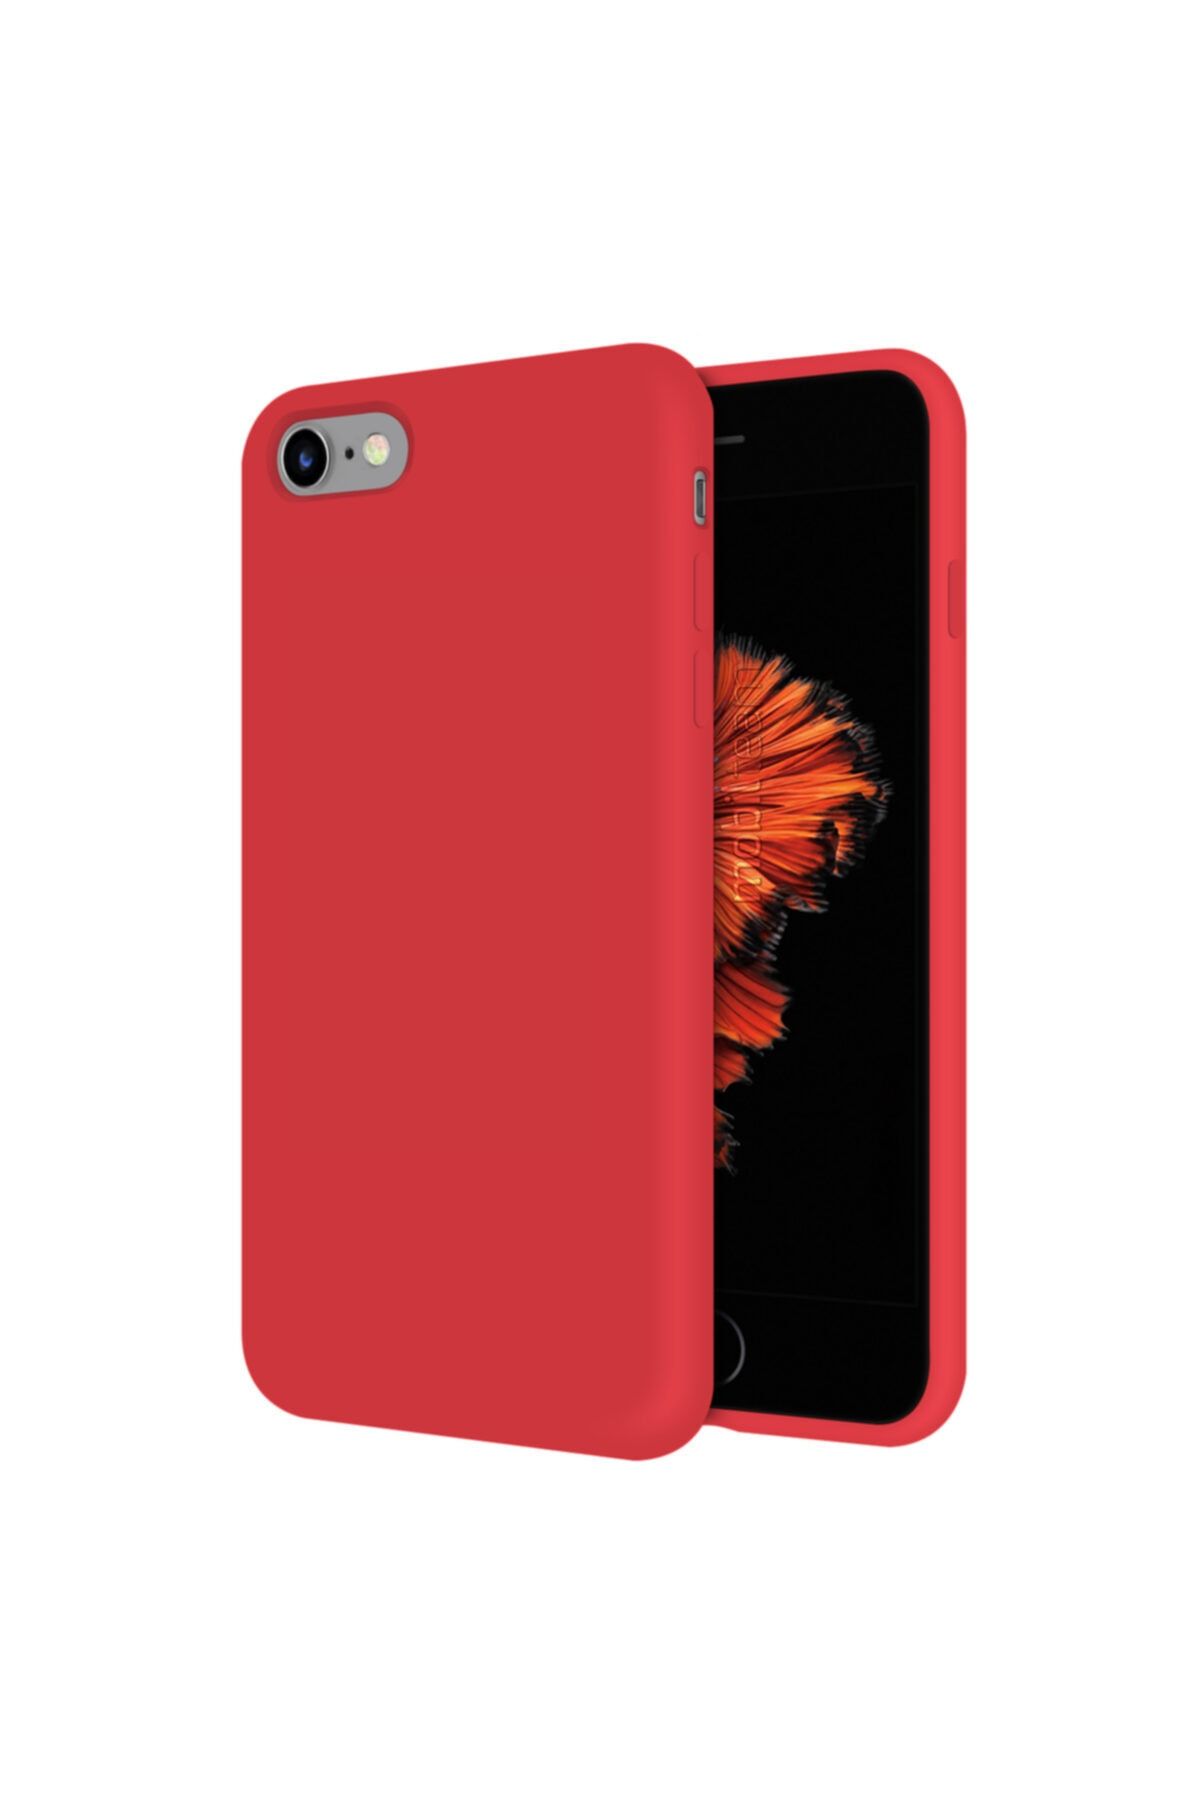 Mobilteam Apple Iphone 6s Kılıf Içi Kadife Lansman Kapak - Kırmızı